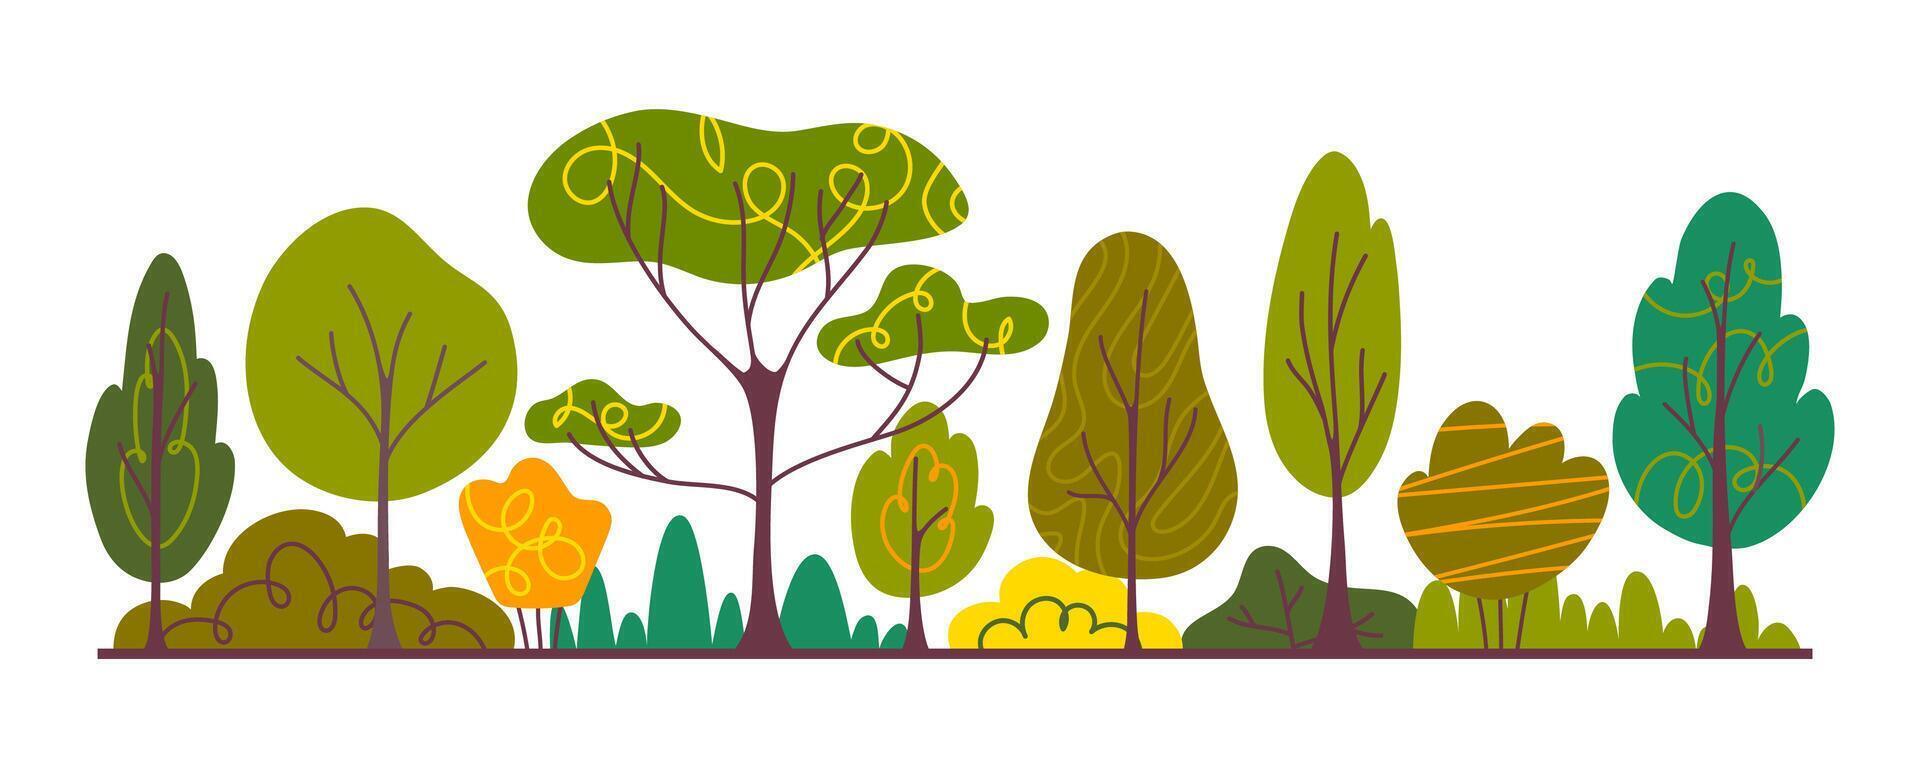 Cartoon Color Autumn Forest or Garden Scene Concept . Vector